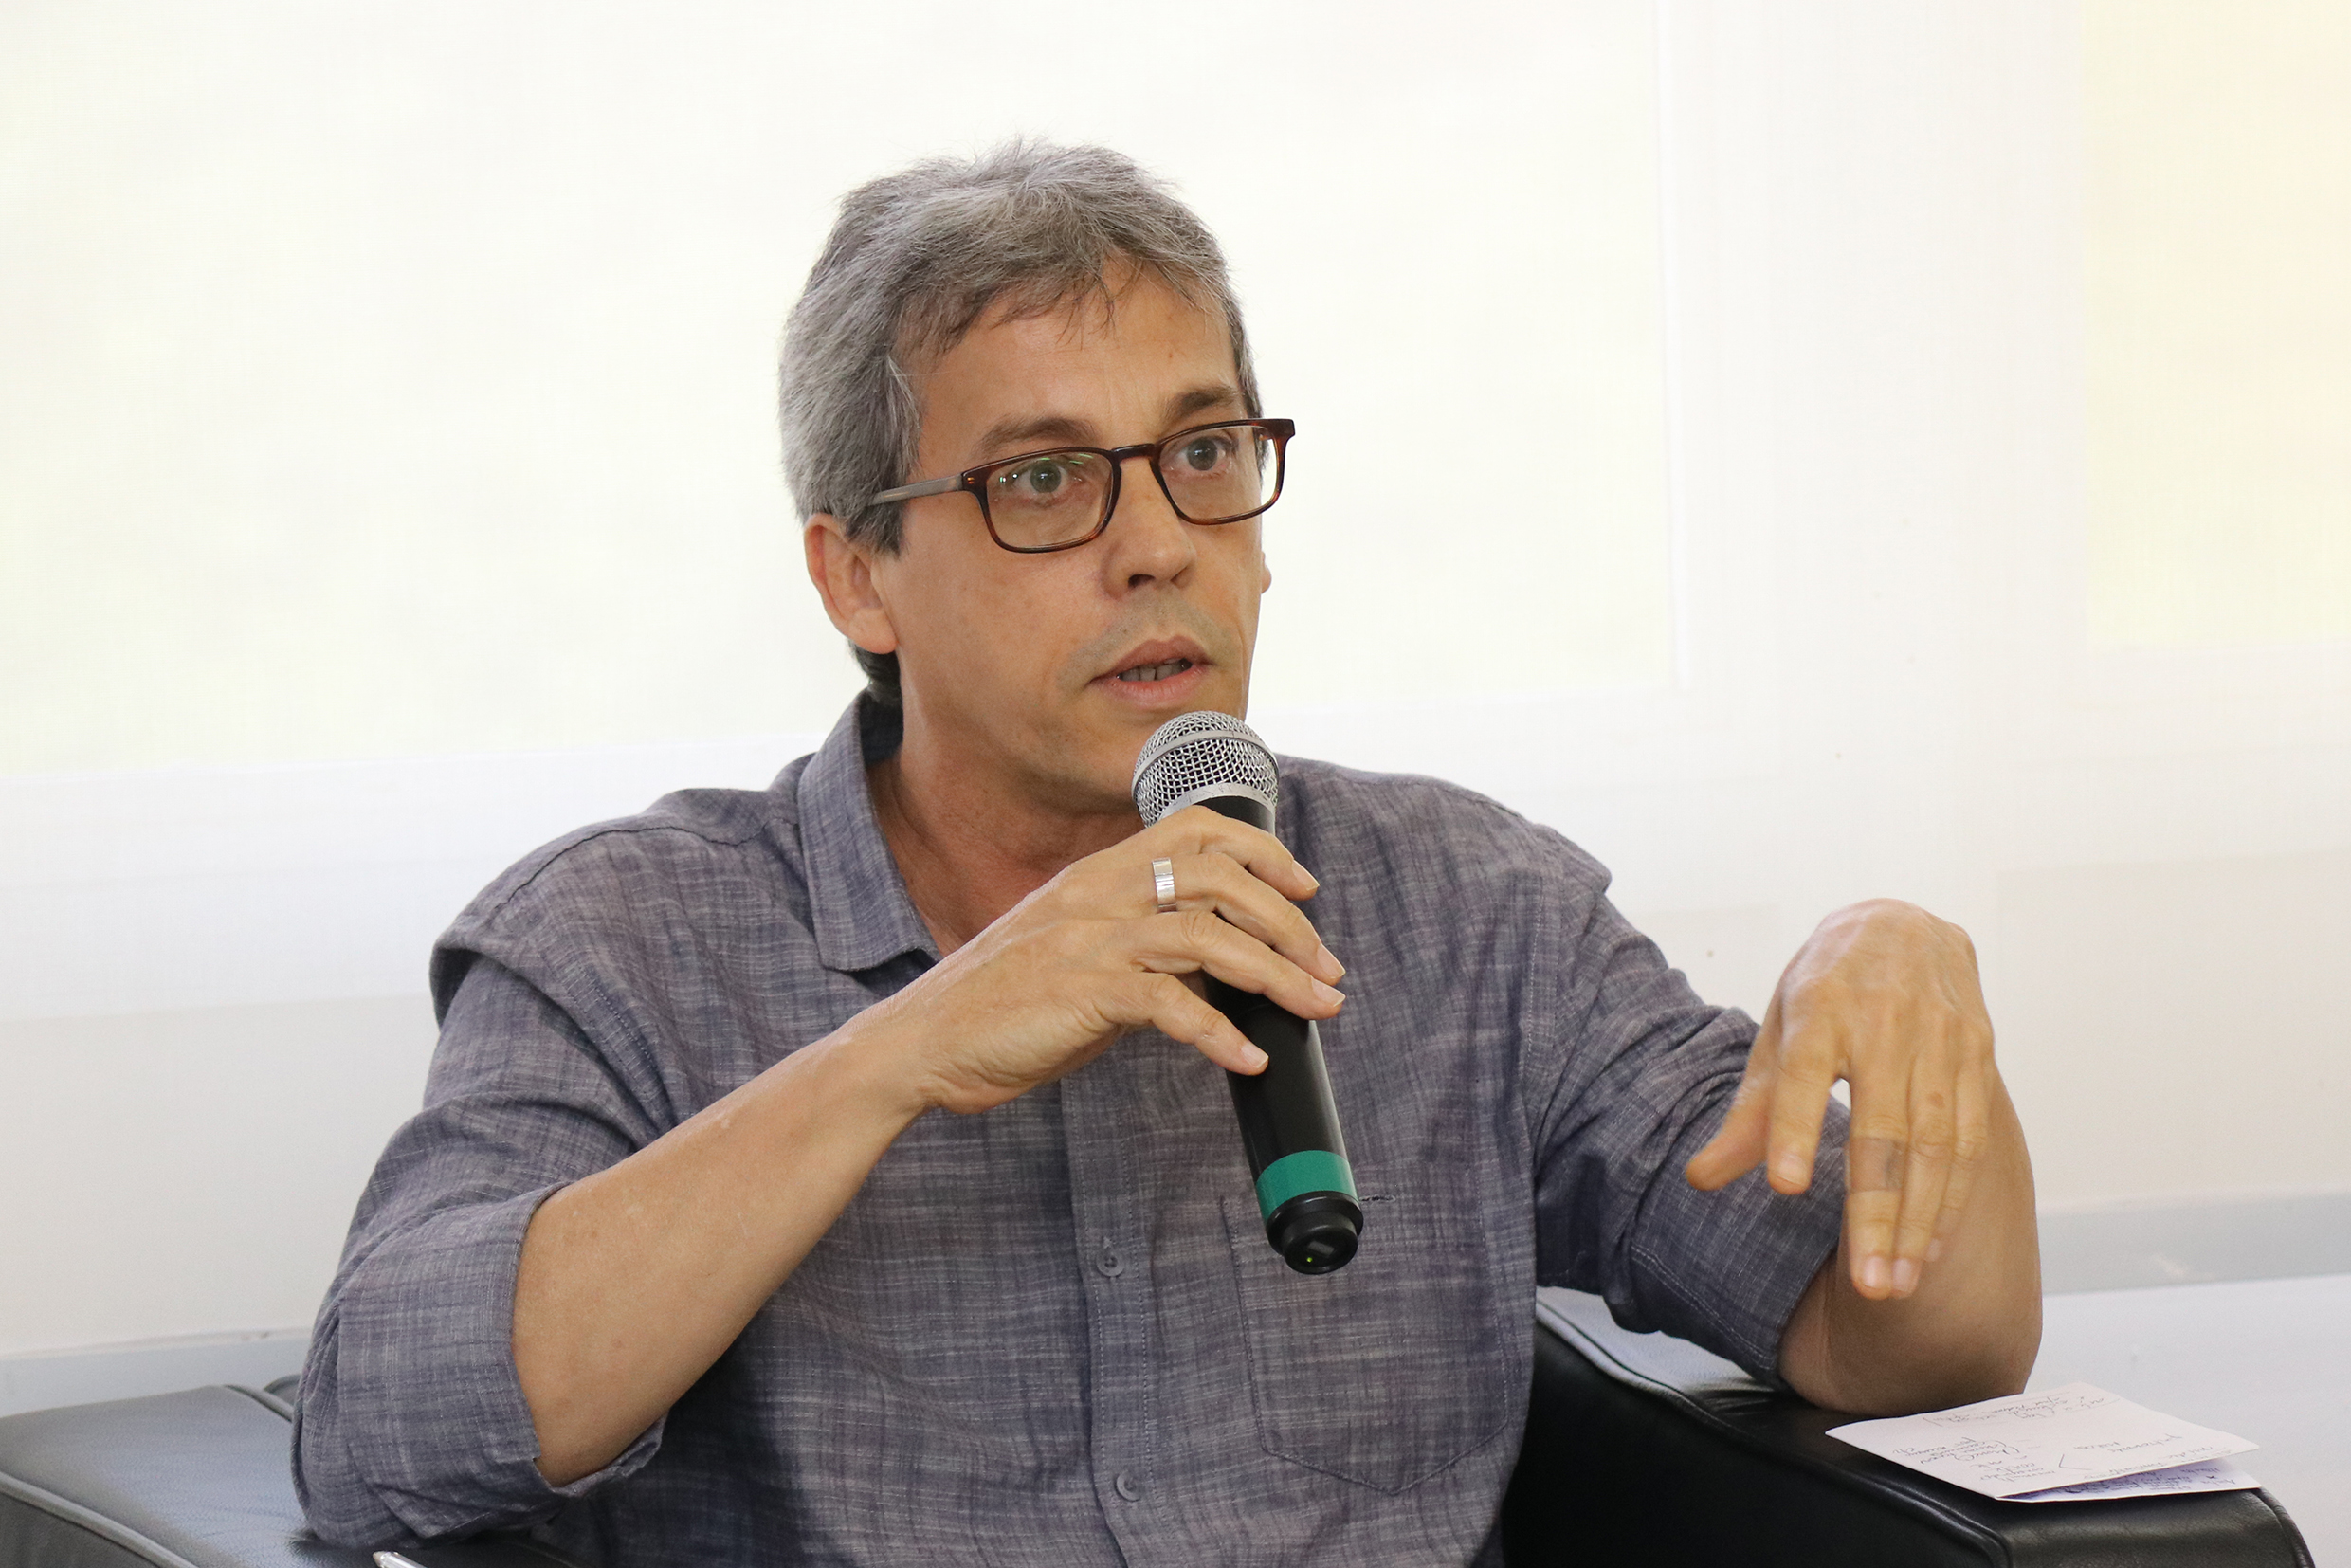 Gabriel Pérez-Barreiro